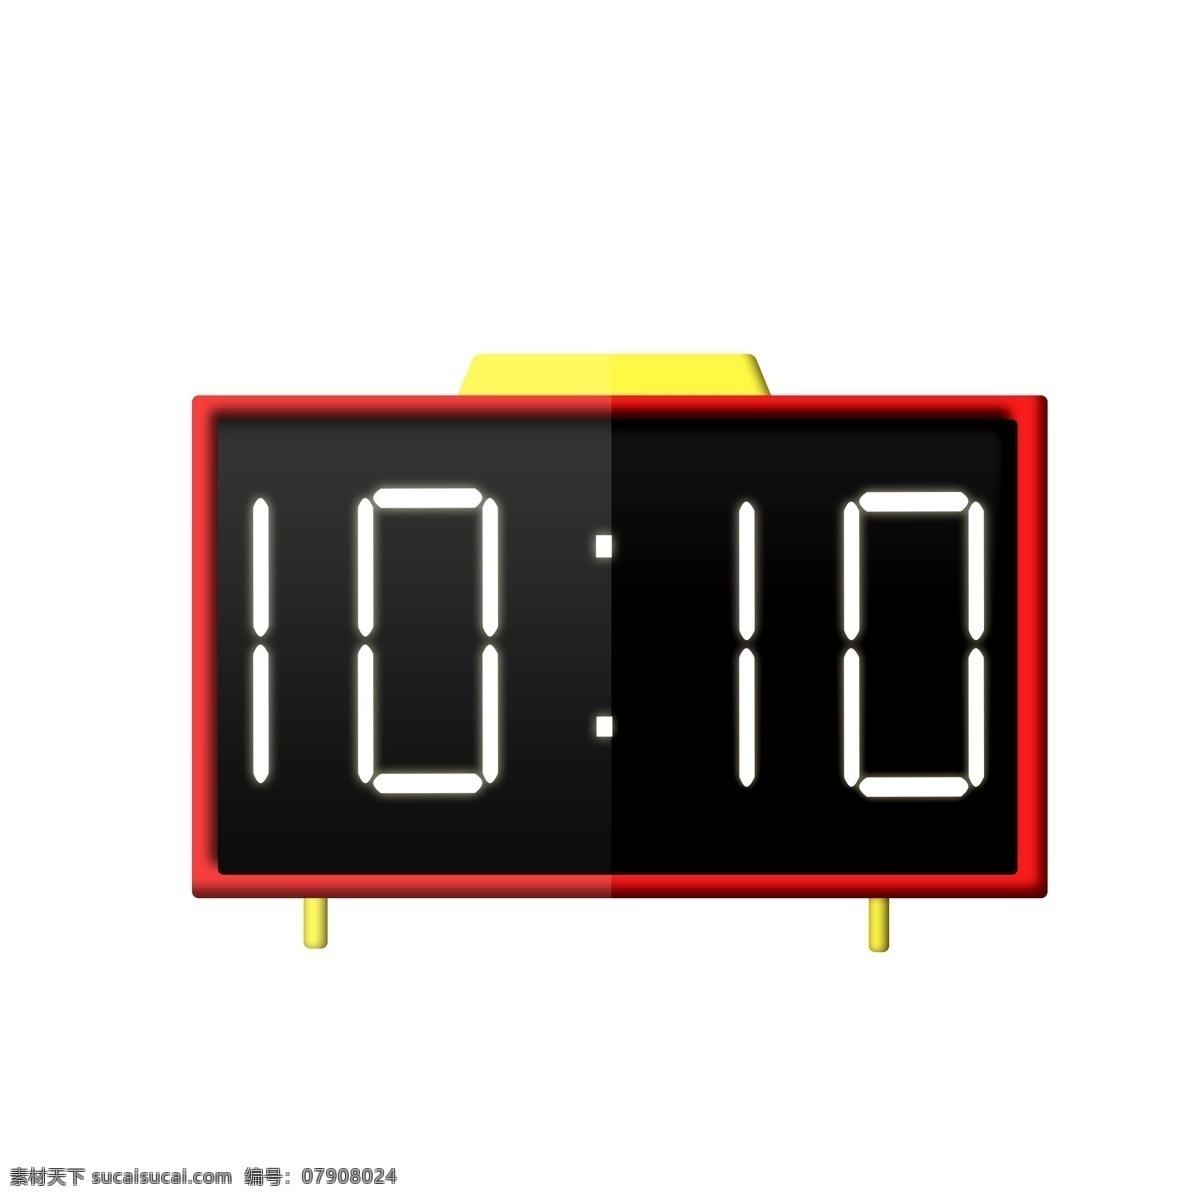 时间 机械 时钟 插画 数字钟表 时间机械时钟 白色数字 装饰挂钟插画 红色边缘 黑色屏幕钟表